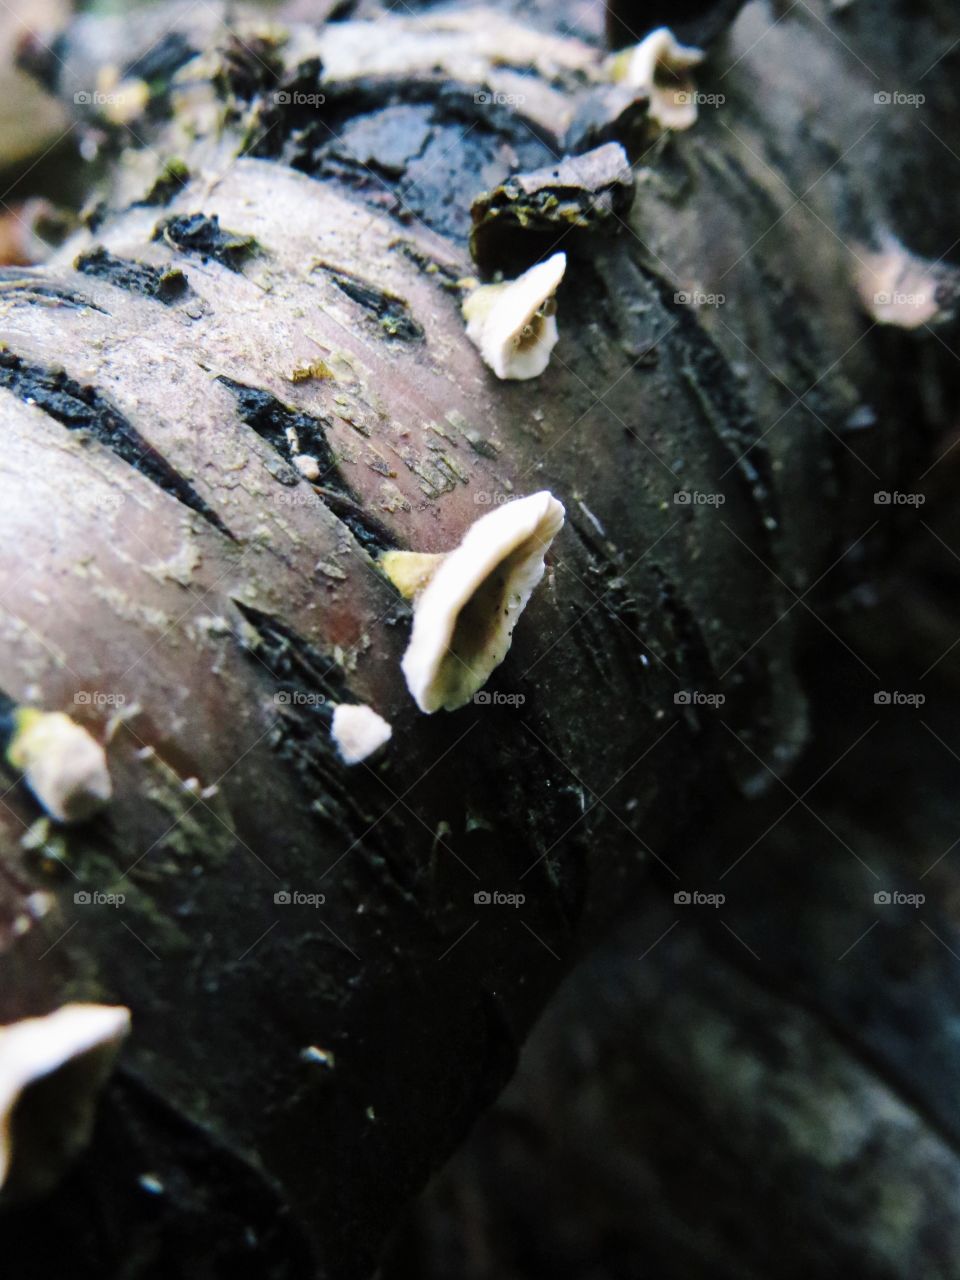 Mushrooms on branch